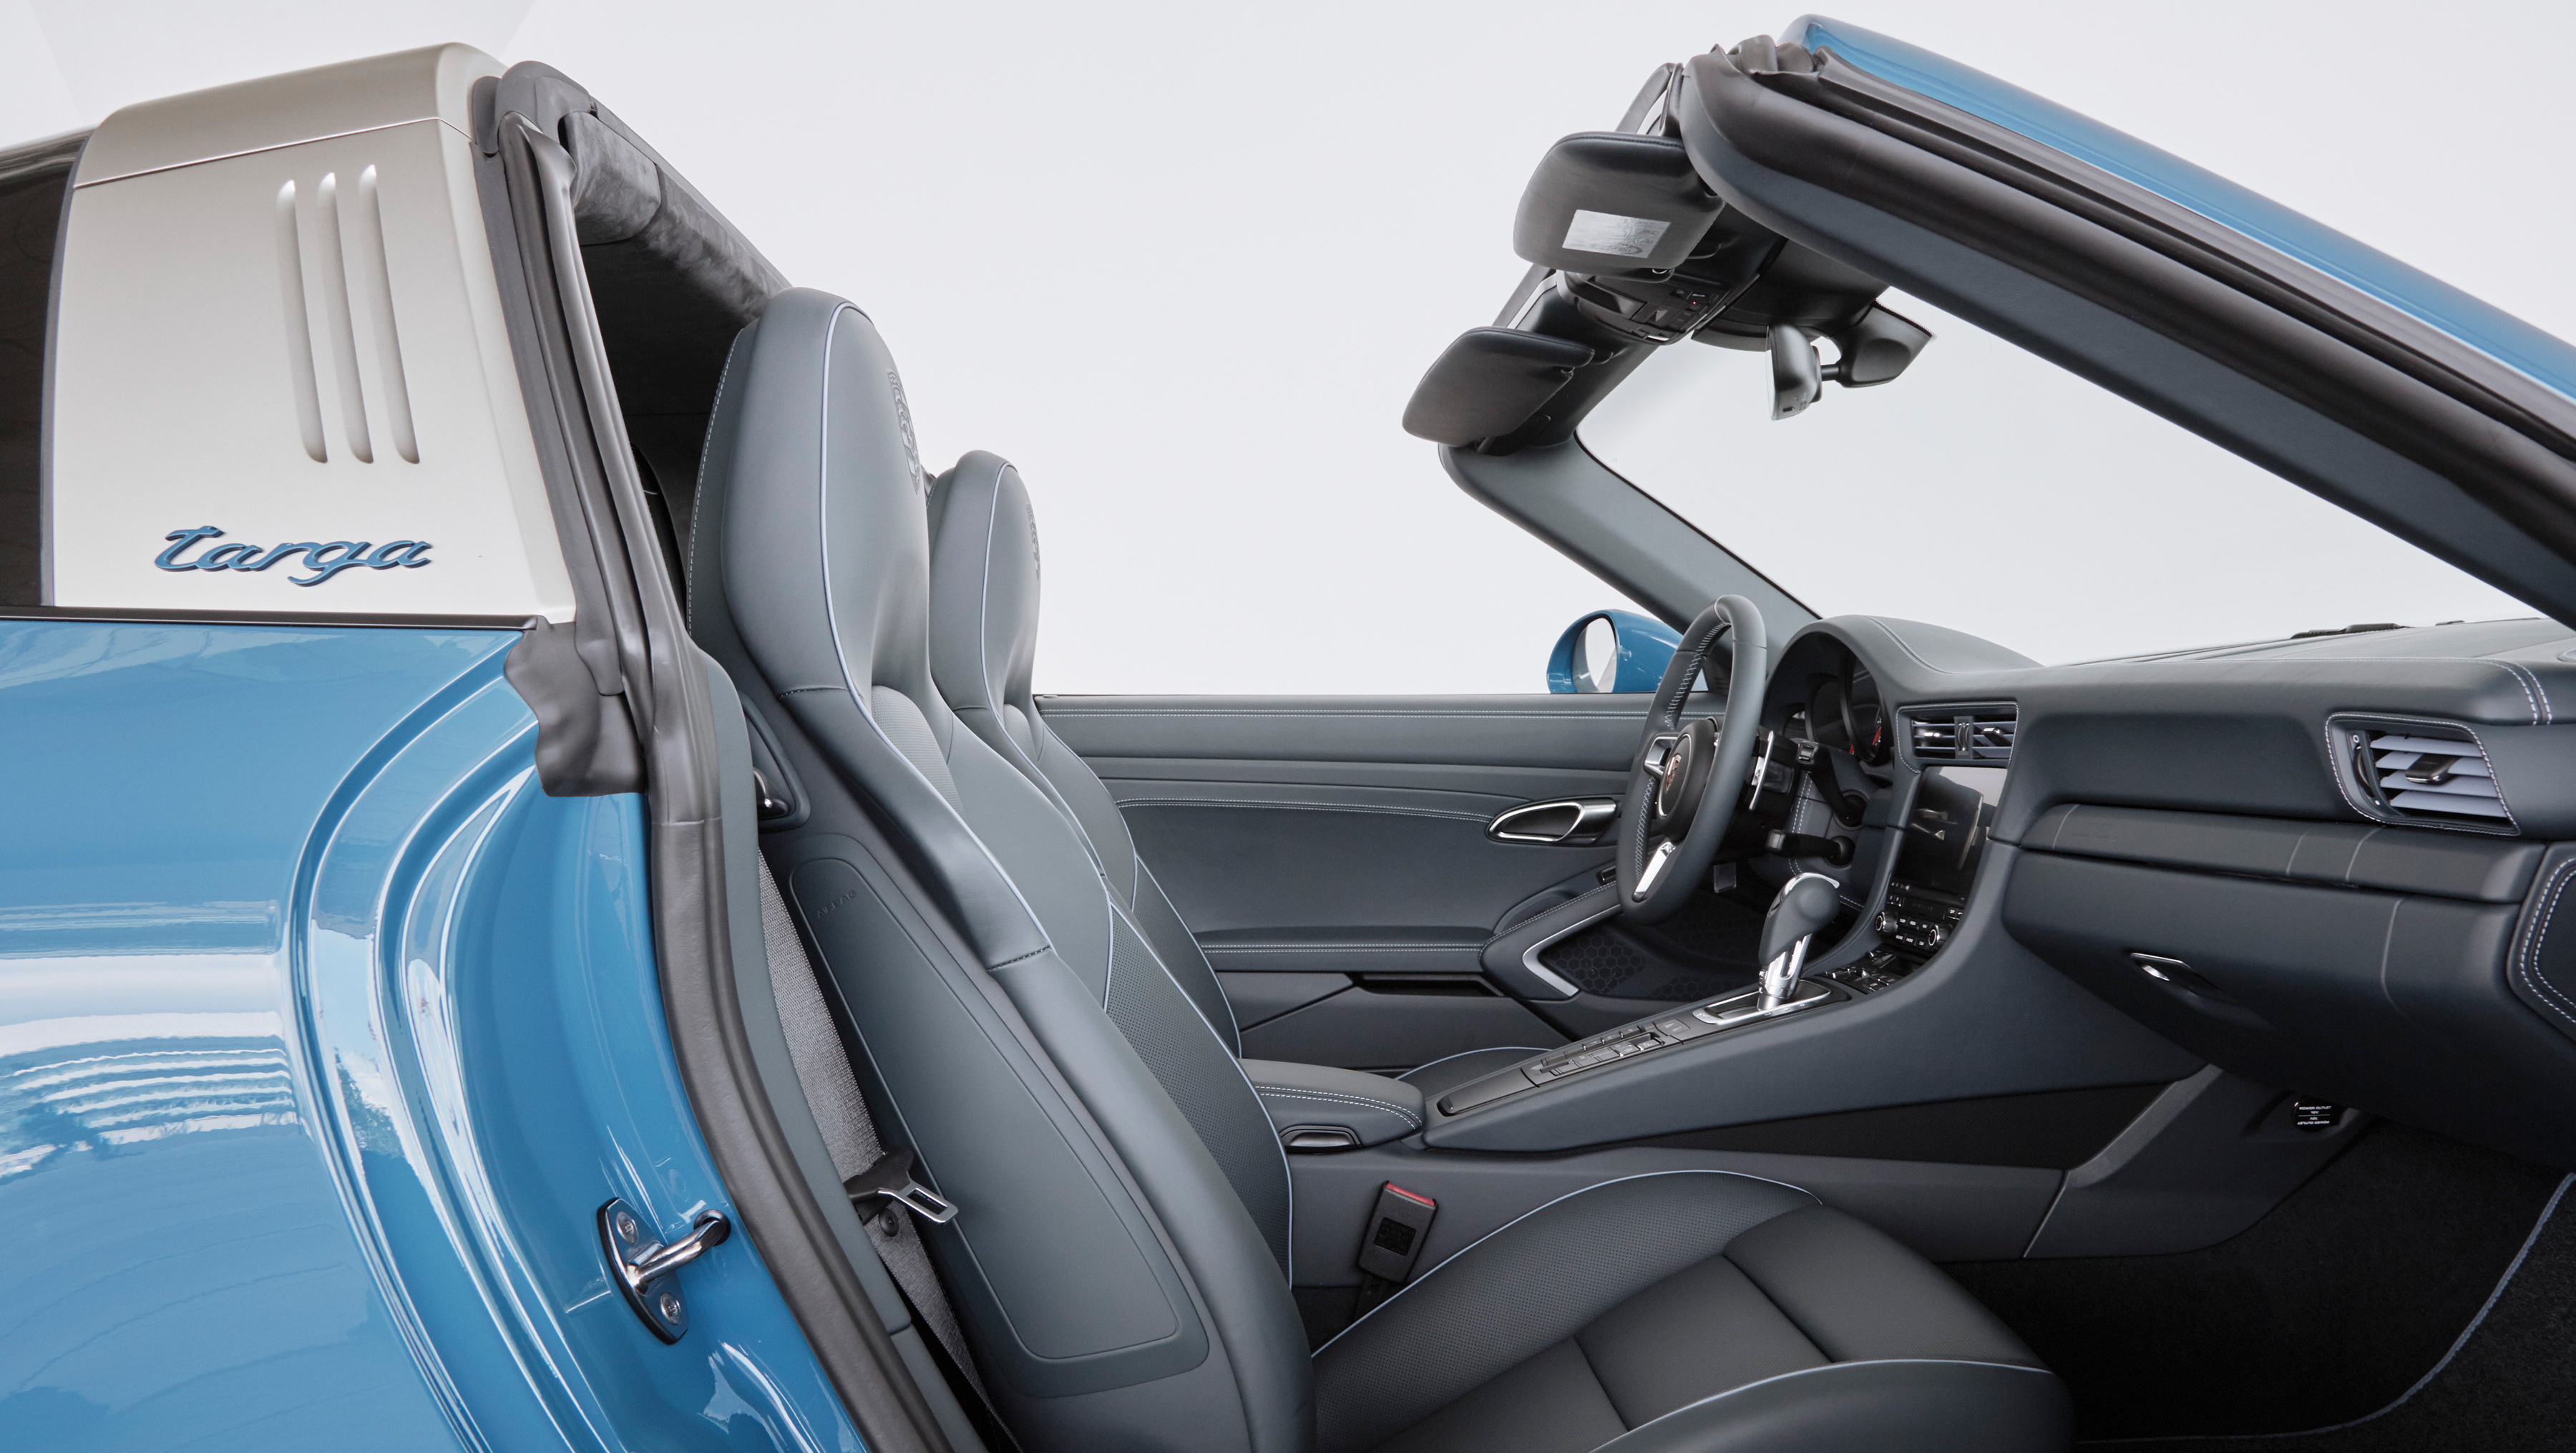 Porsche Exclusive 911 Targa 4S Design Edition Interiors